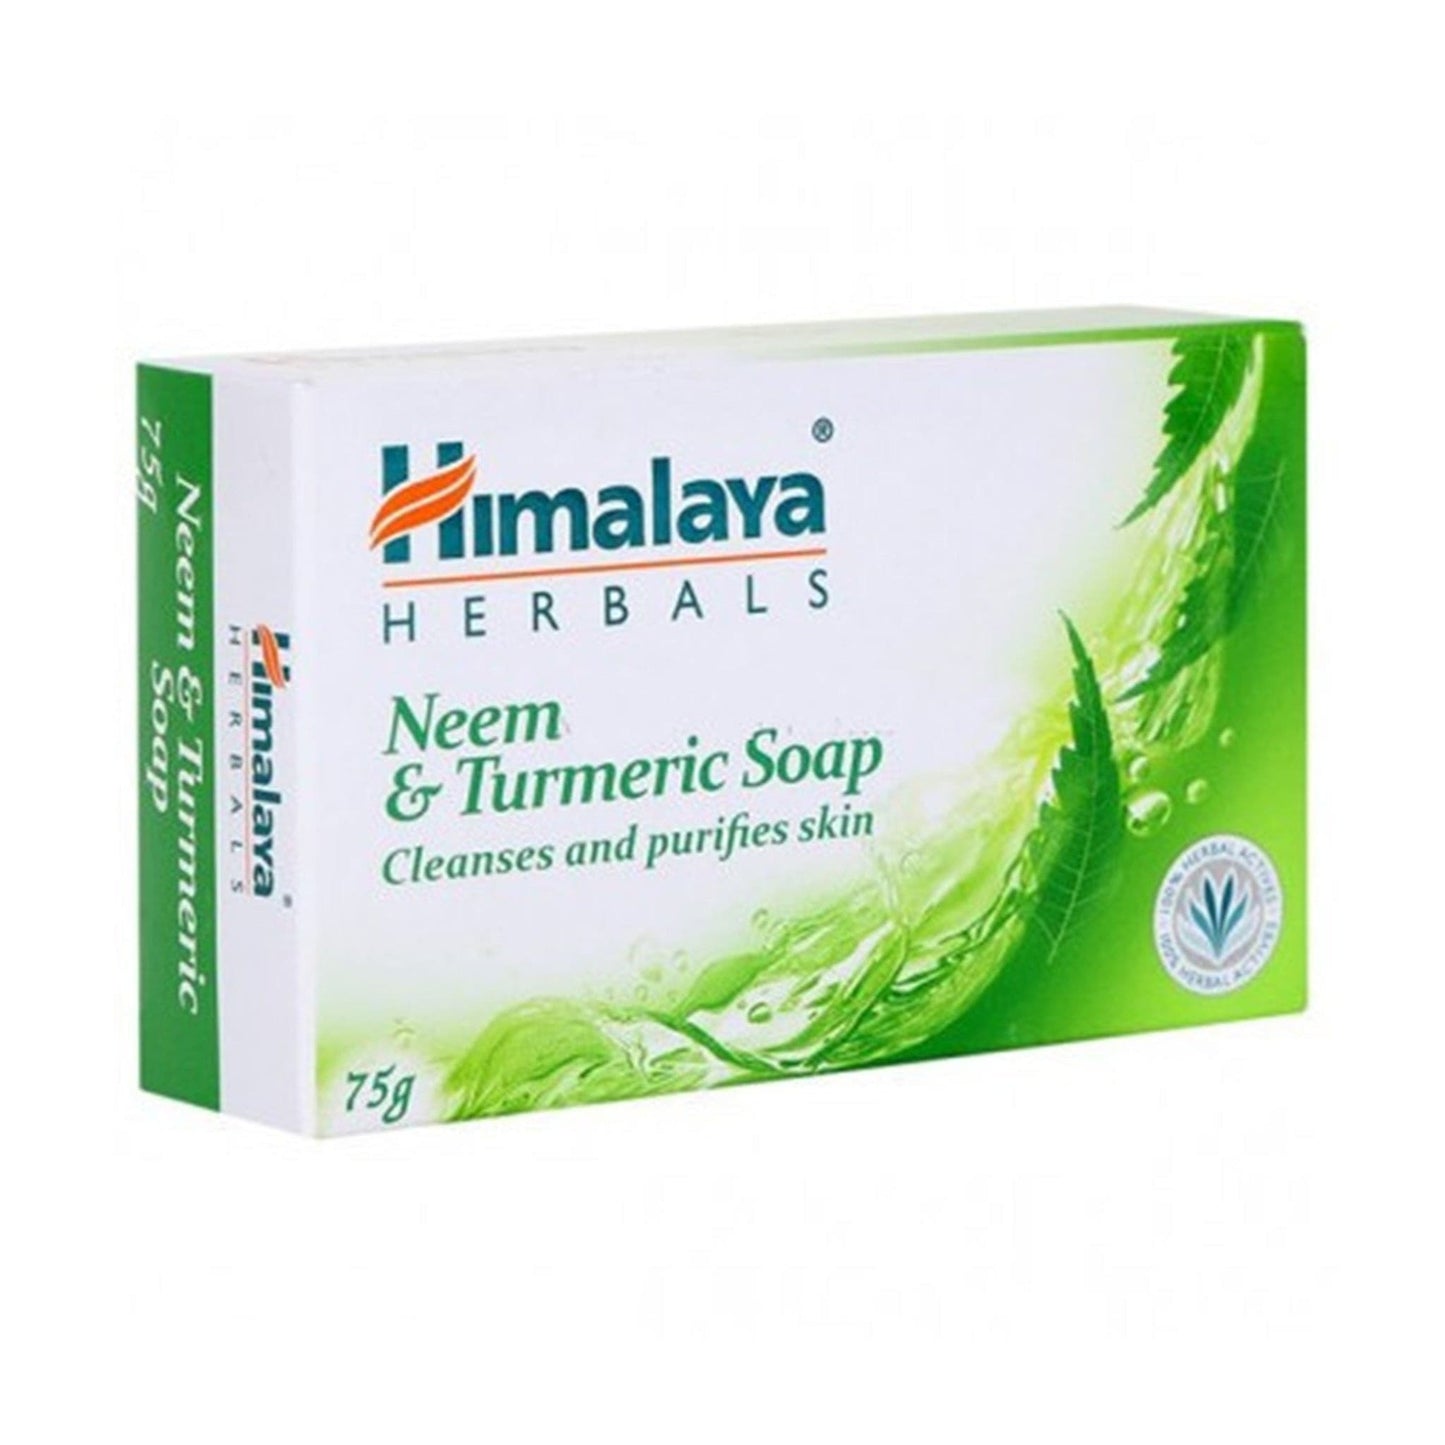 Himalaya Neem & Turmeric Soap.